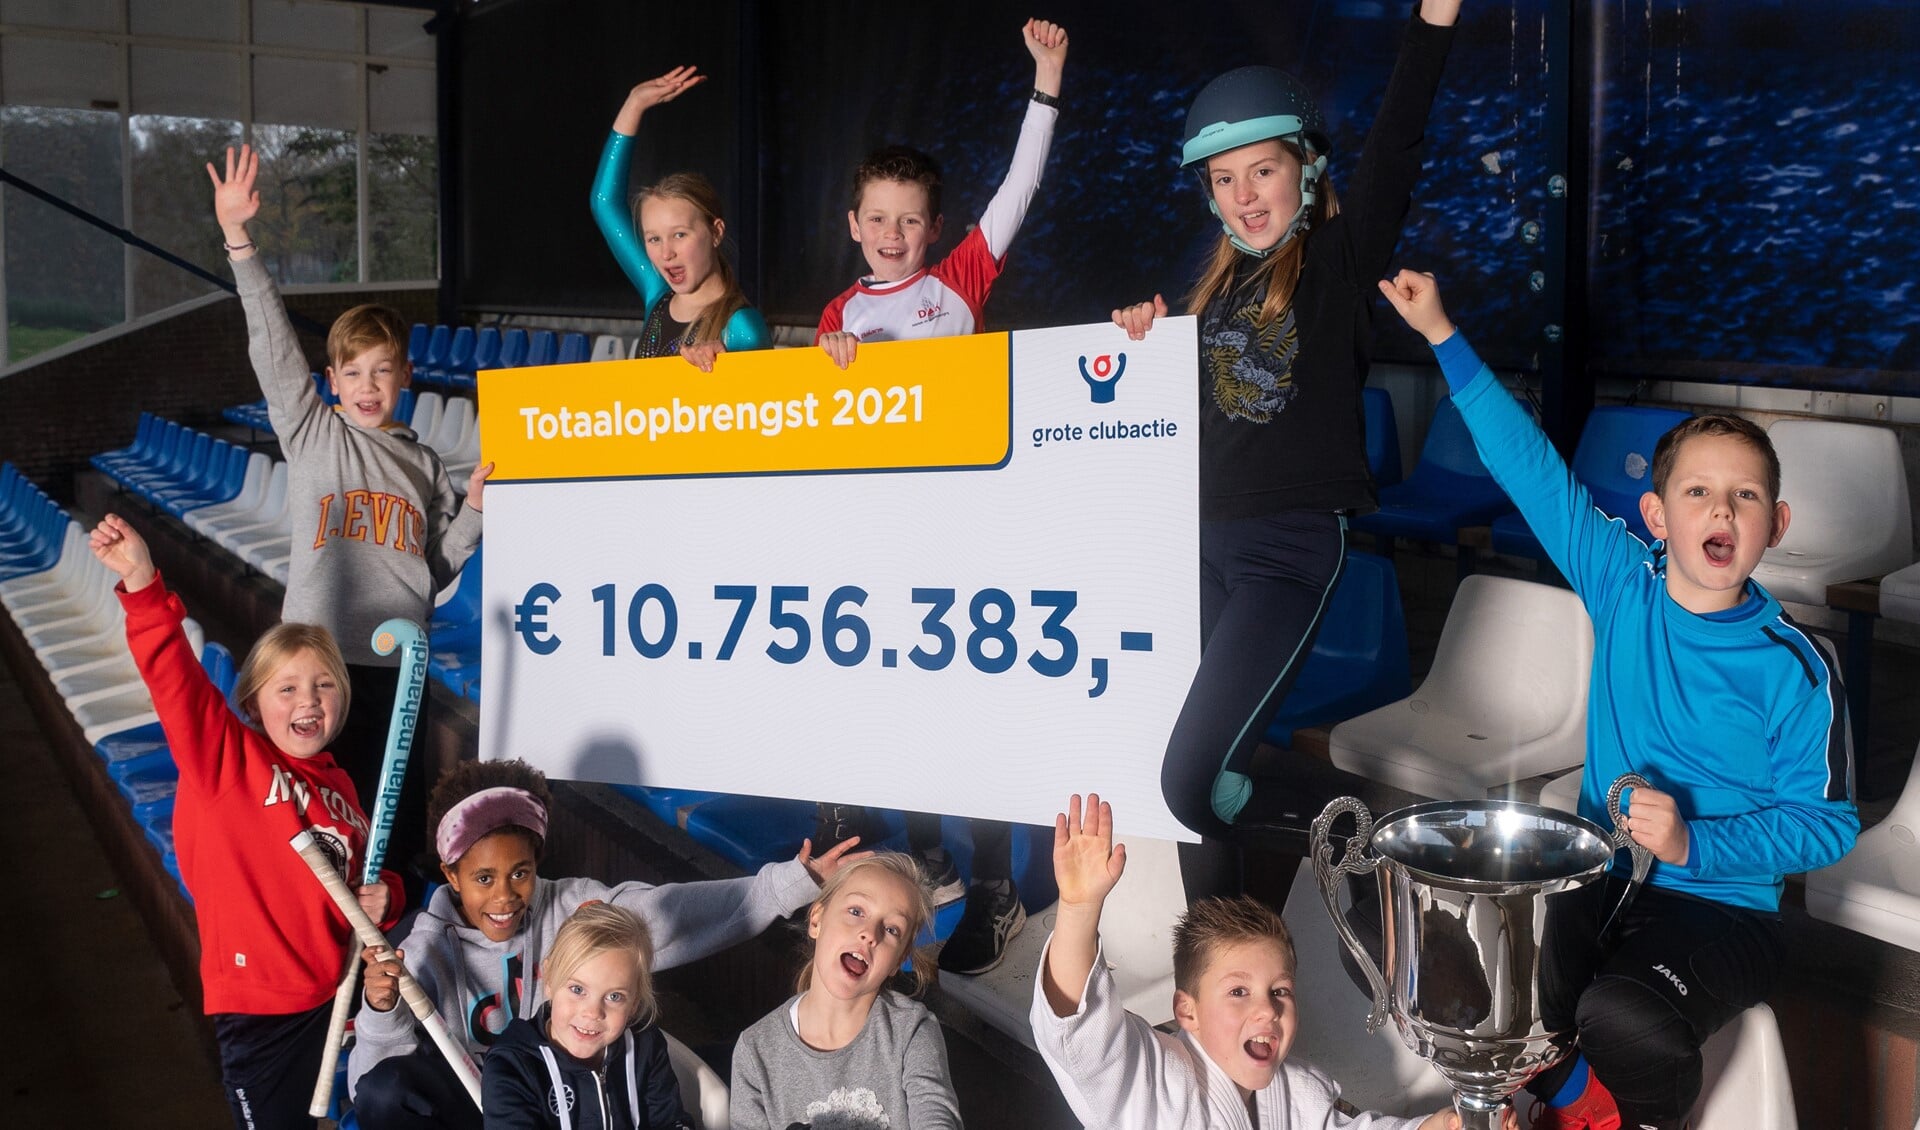 Landelijk haalden de 5267 deelnemende clubs ruim 10,7 miljoen euro op. De gemeente Someren droeg bij met 8472 euro.